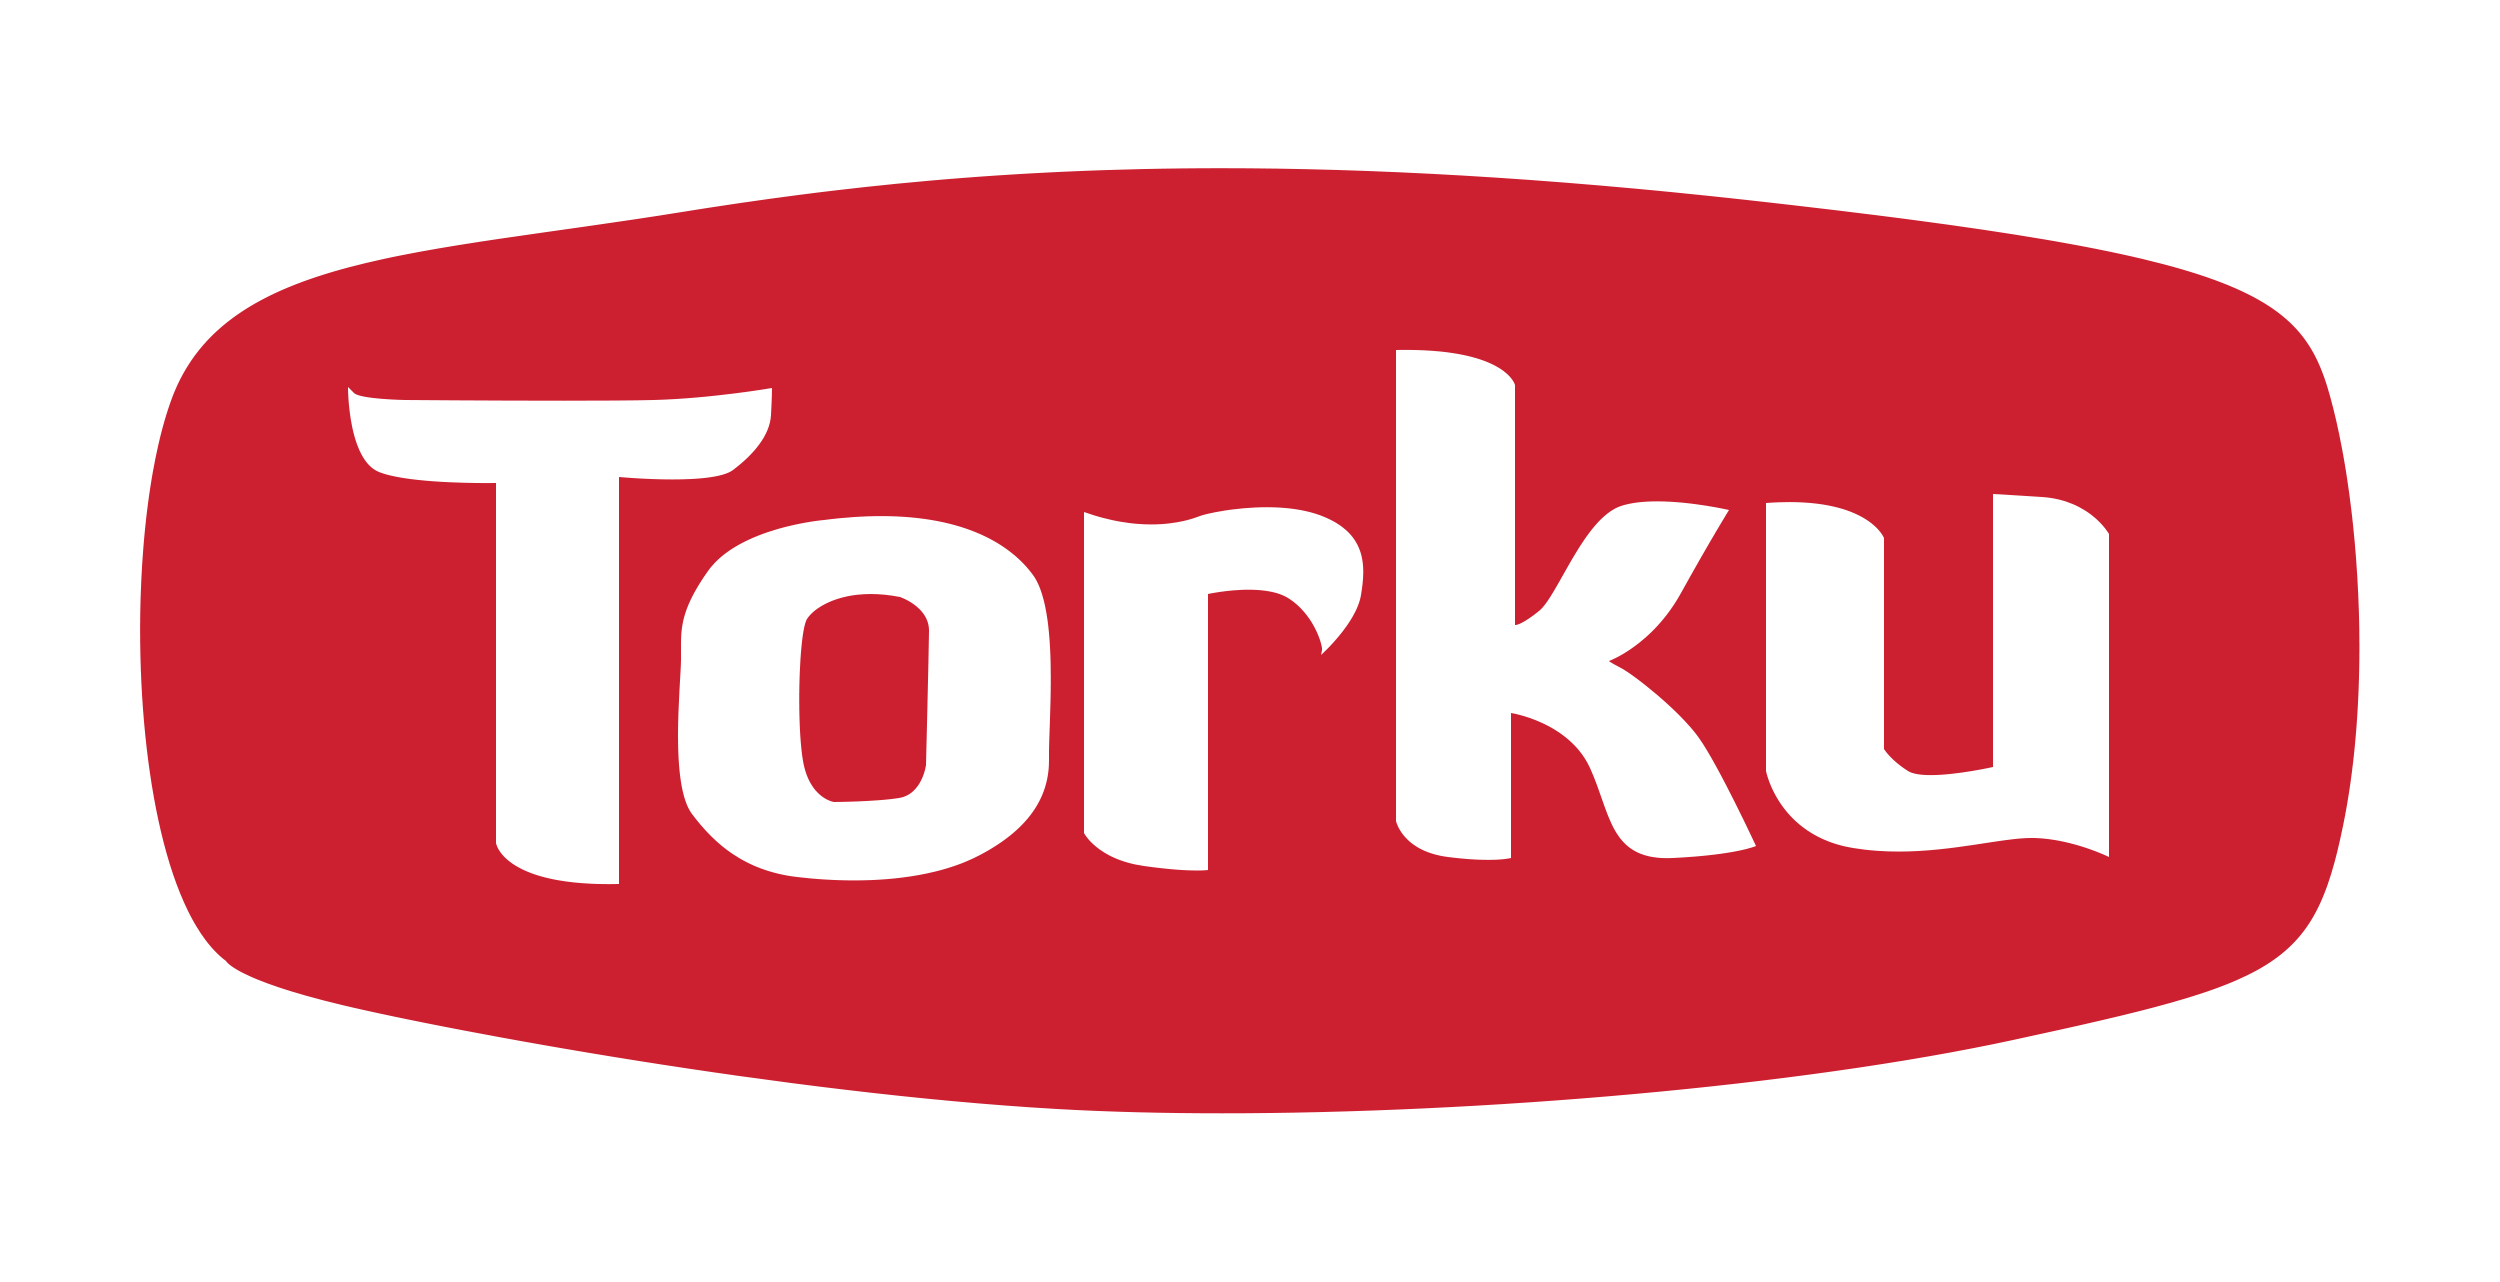 torku logo png #4872